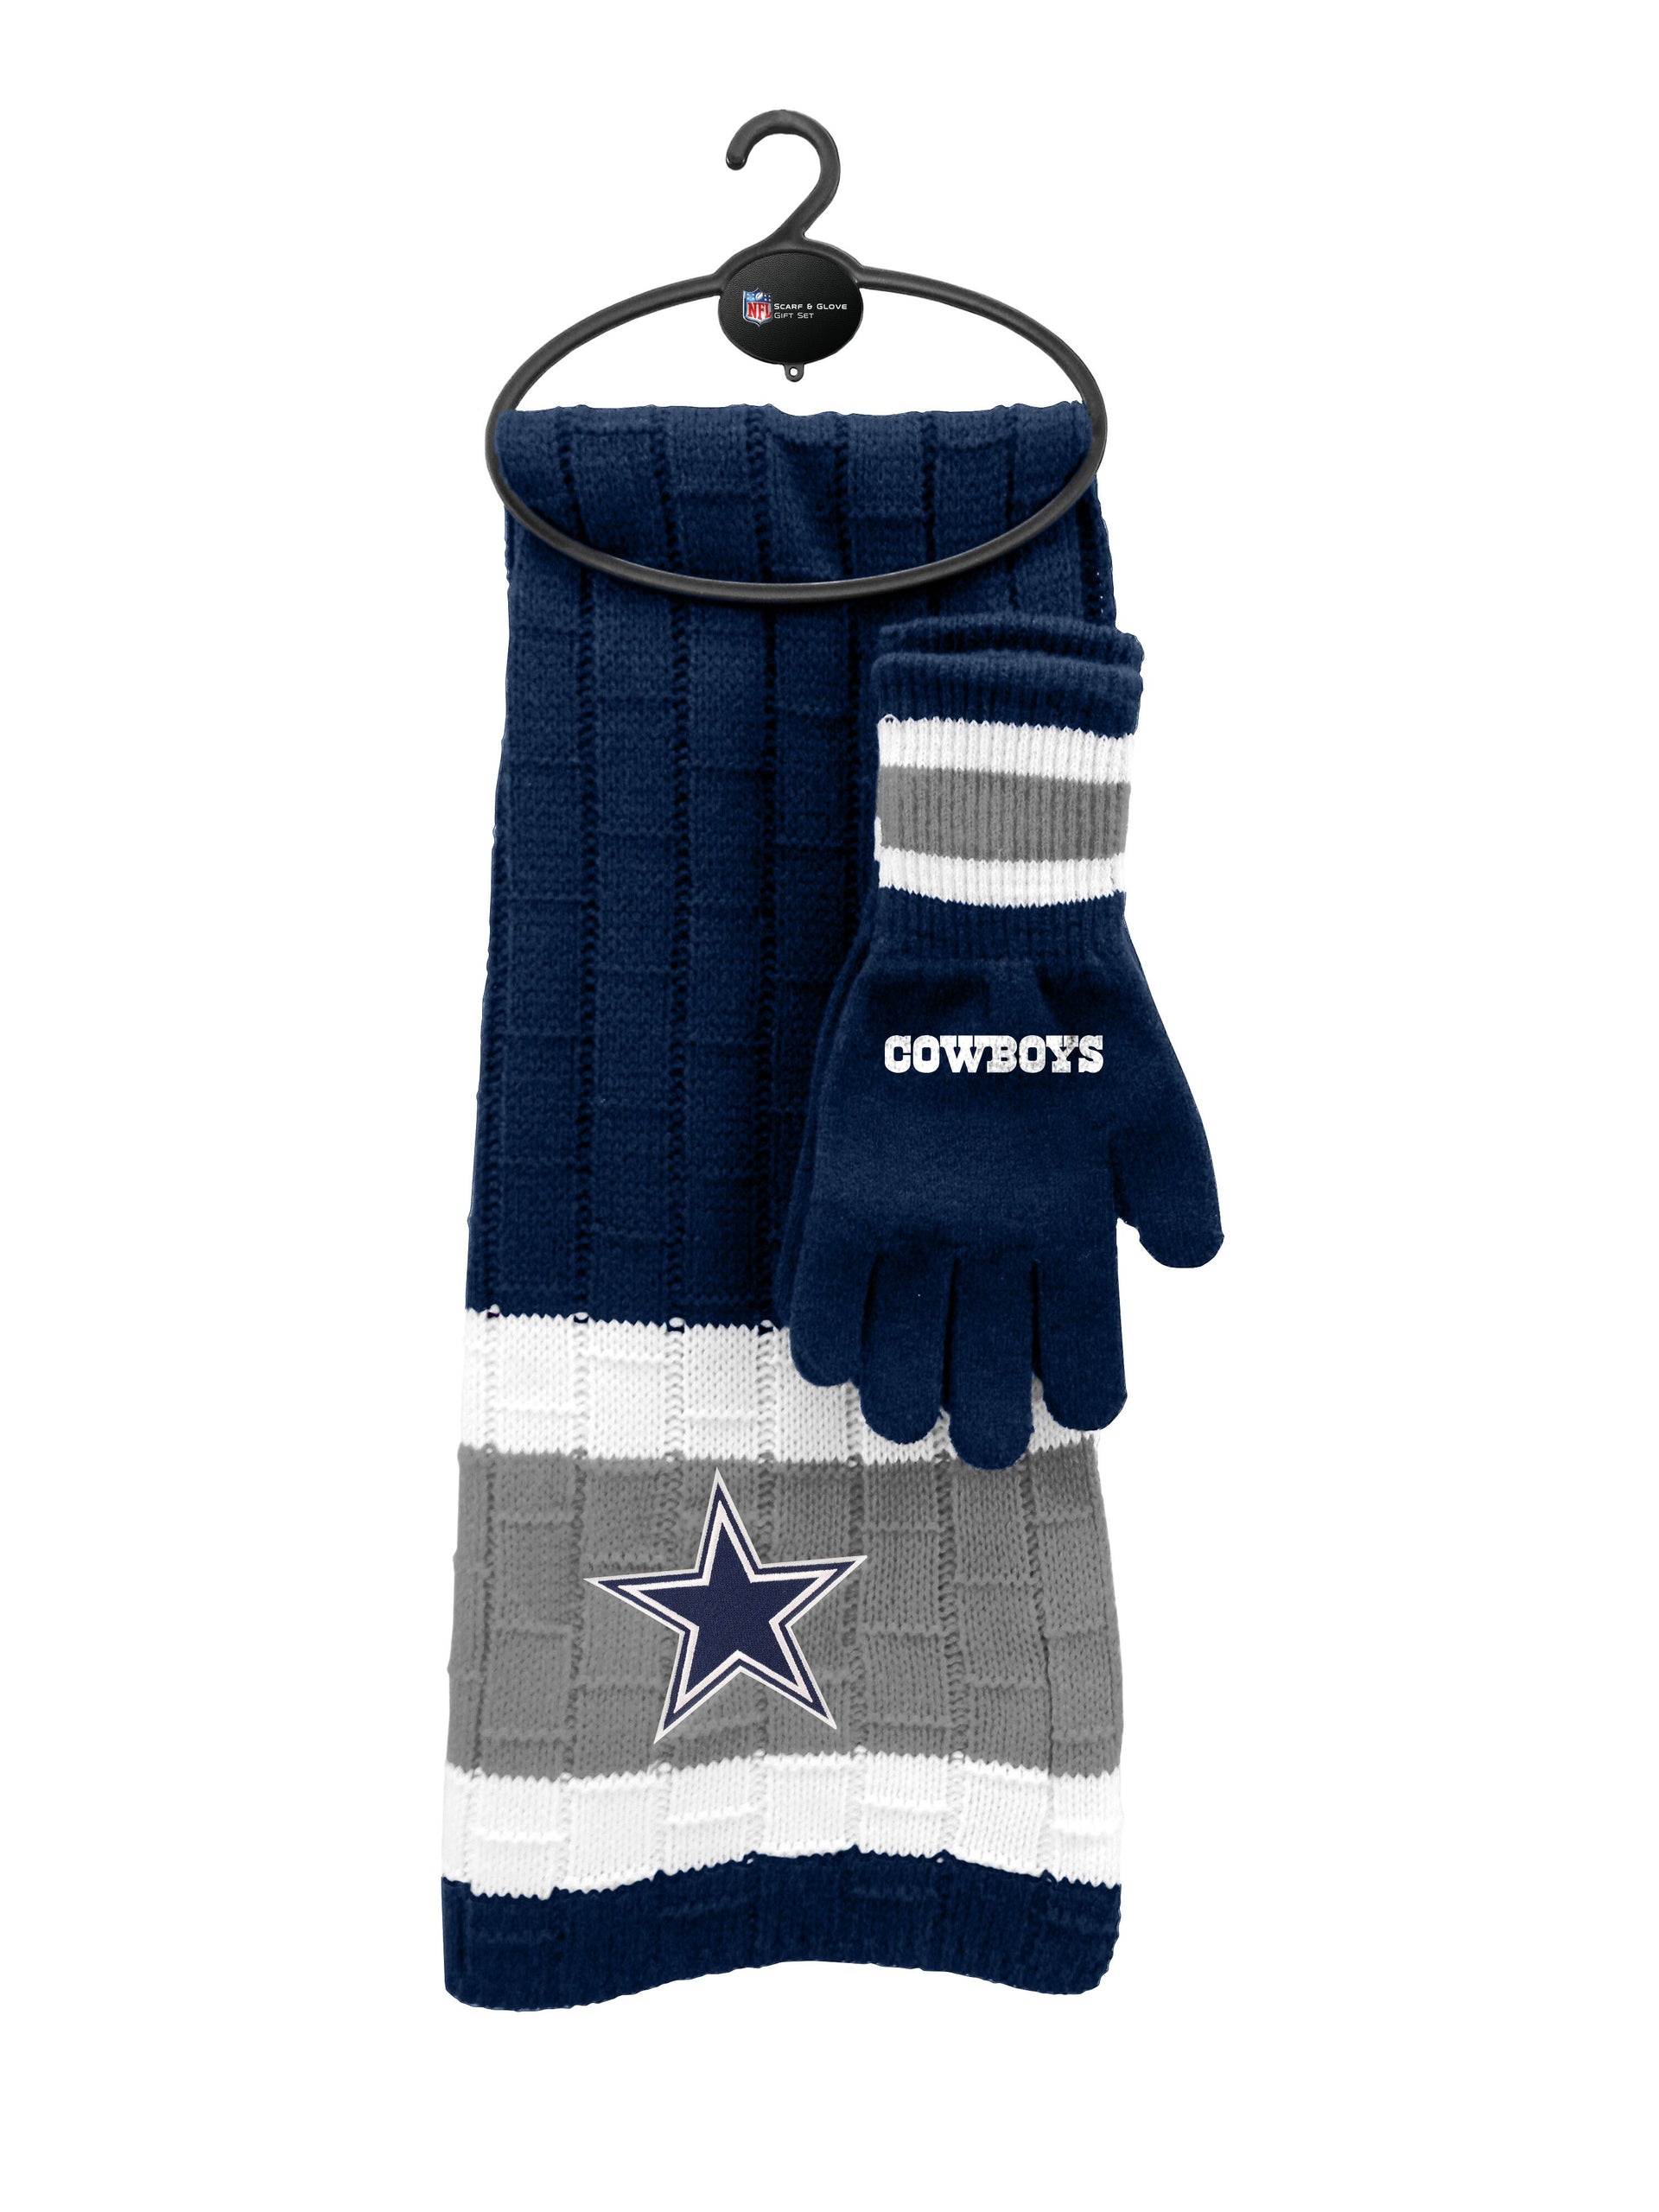 Dallas Cowboys Scarf Glove Gift Set - Dynasty Sports & Framing 